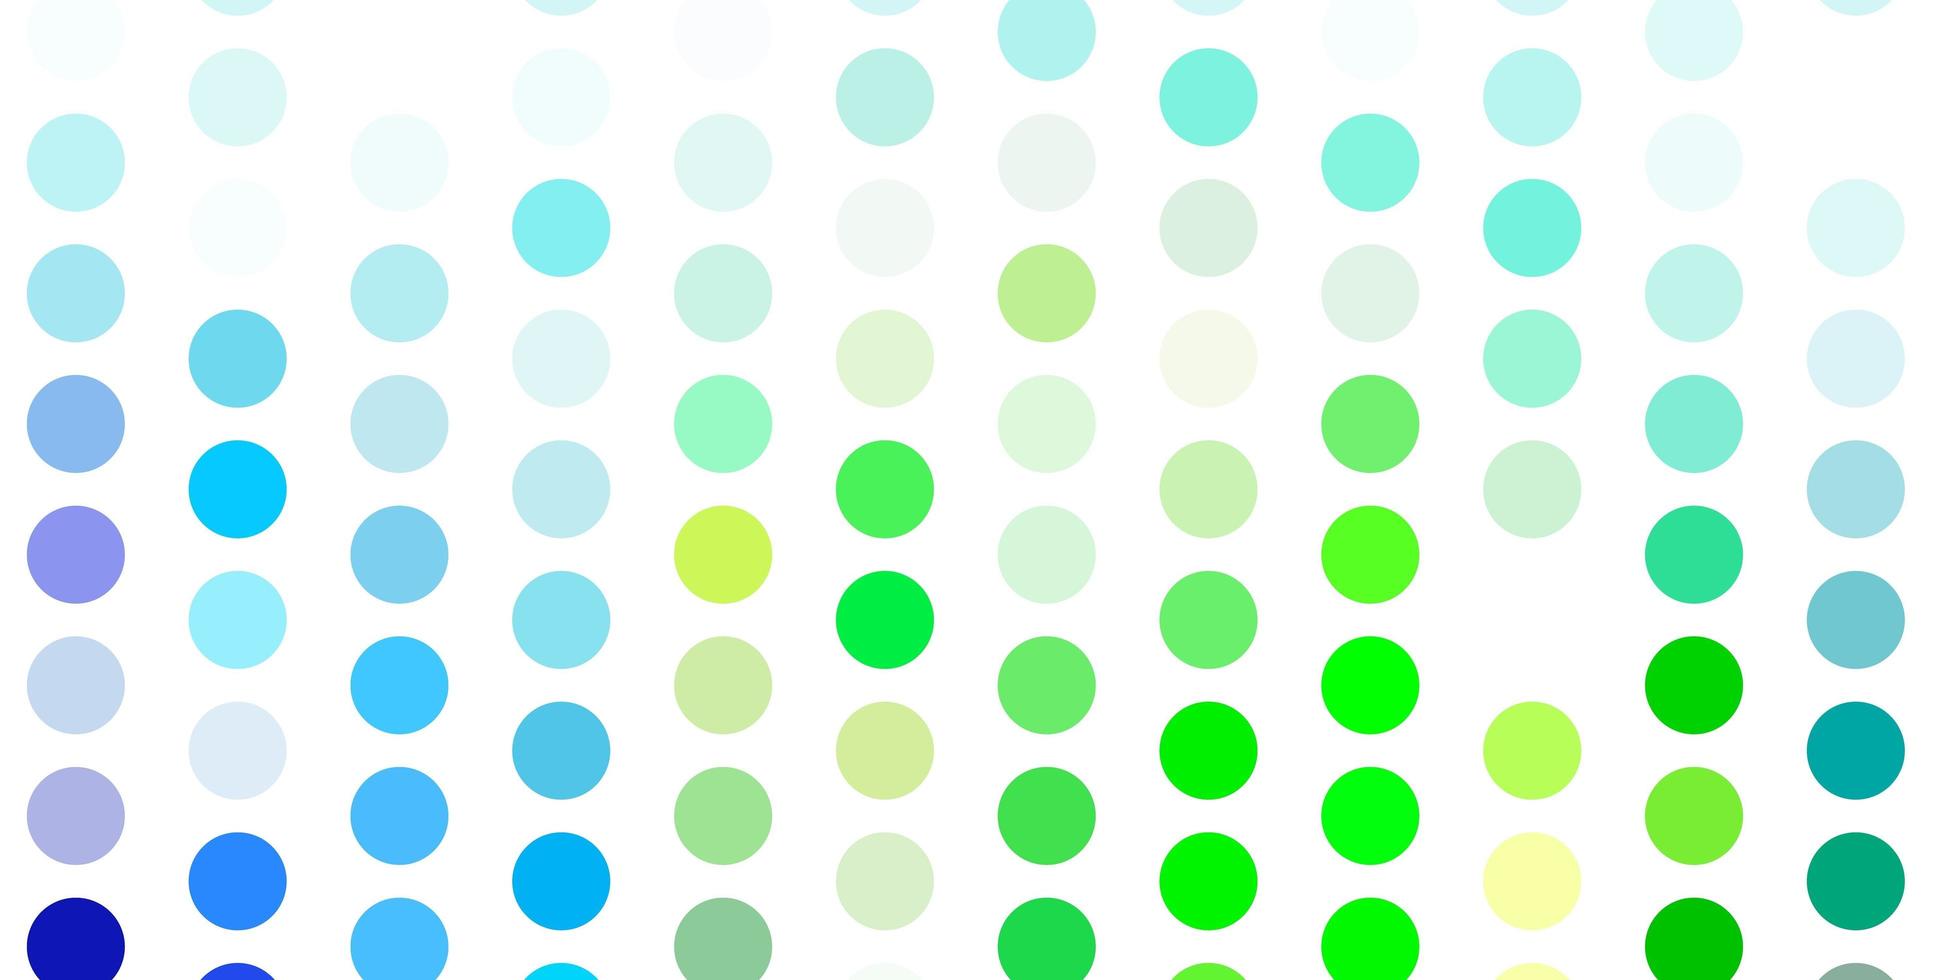 padrão de vetor azul e verde claro com esferas.